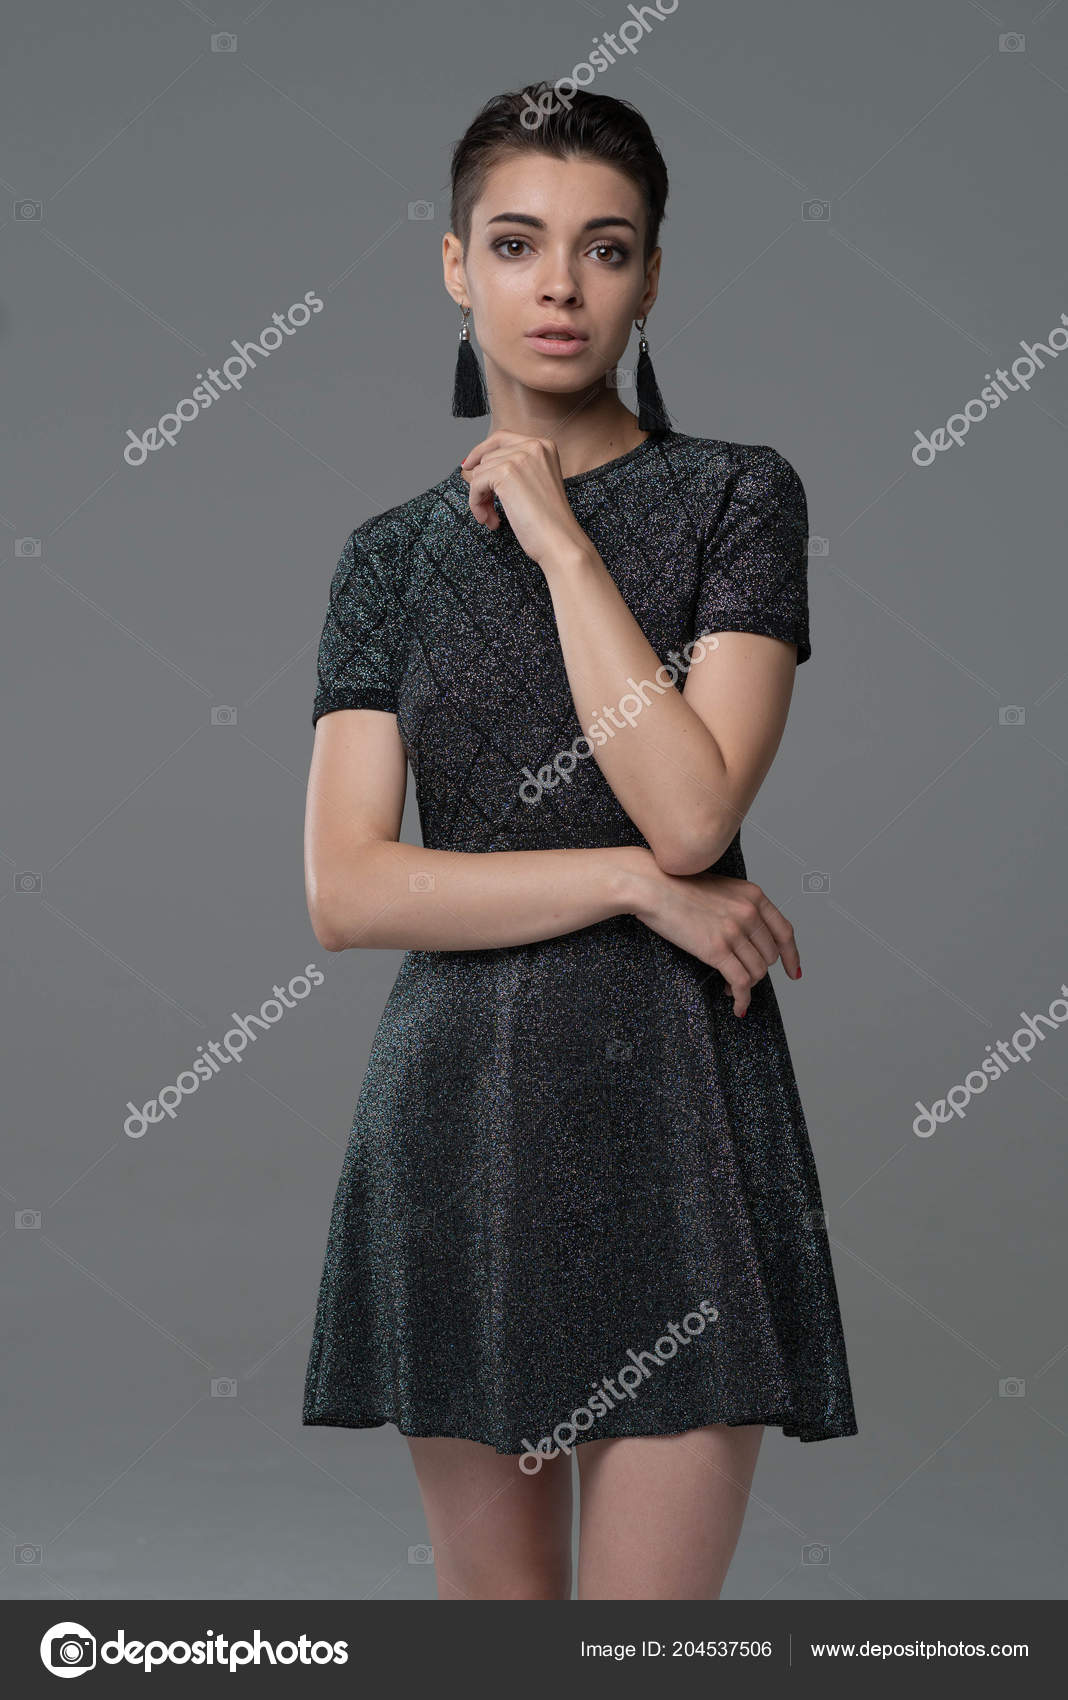 https://st4.depositphotos.com/10086424/20453/i/1600/depositphotos_204537506-stock-photo-young-beautiful-girl-posing-studio.jpg